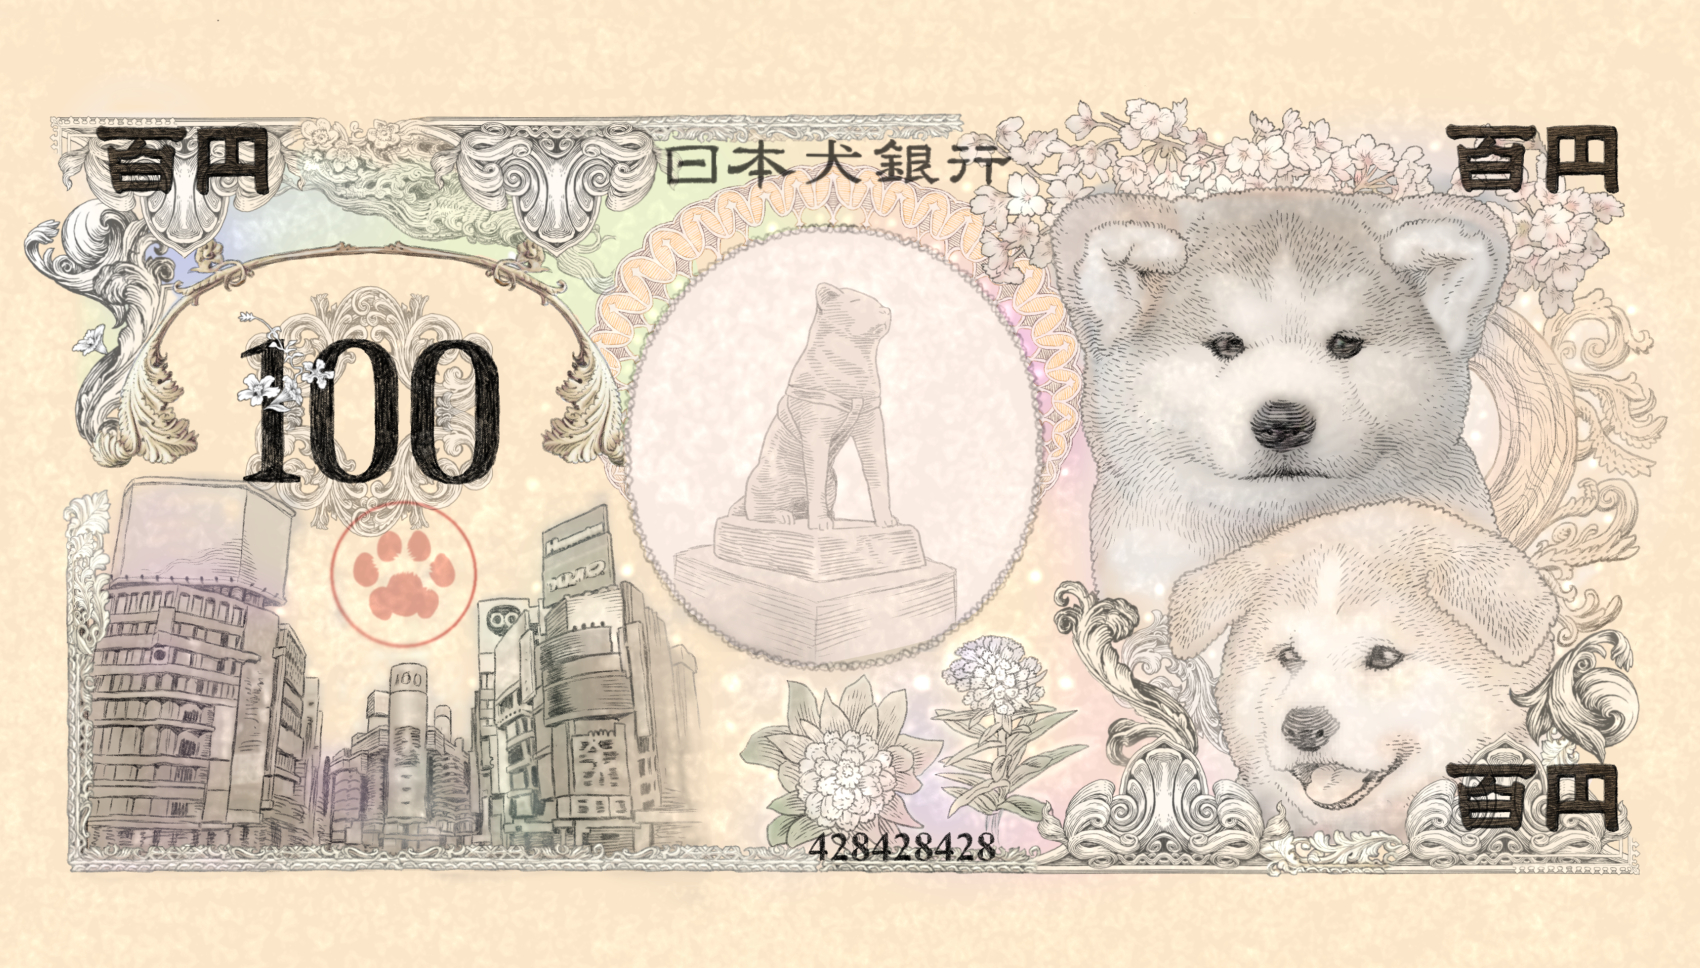 渋谷の日にちなんだ モッフモフの 秋田犬 紙幣が雑貨になりました 犬紙幣 渋谷 が登場 Newscast